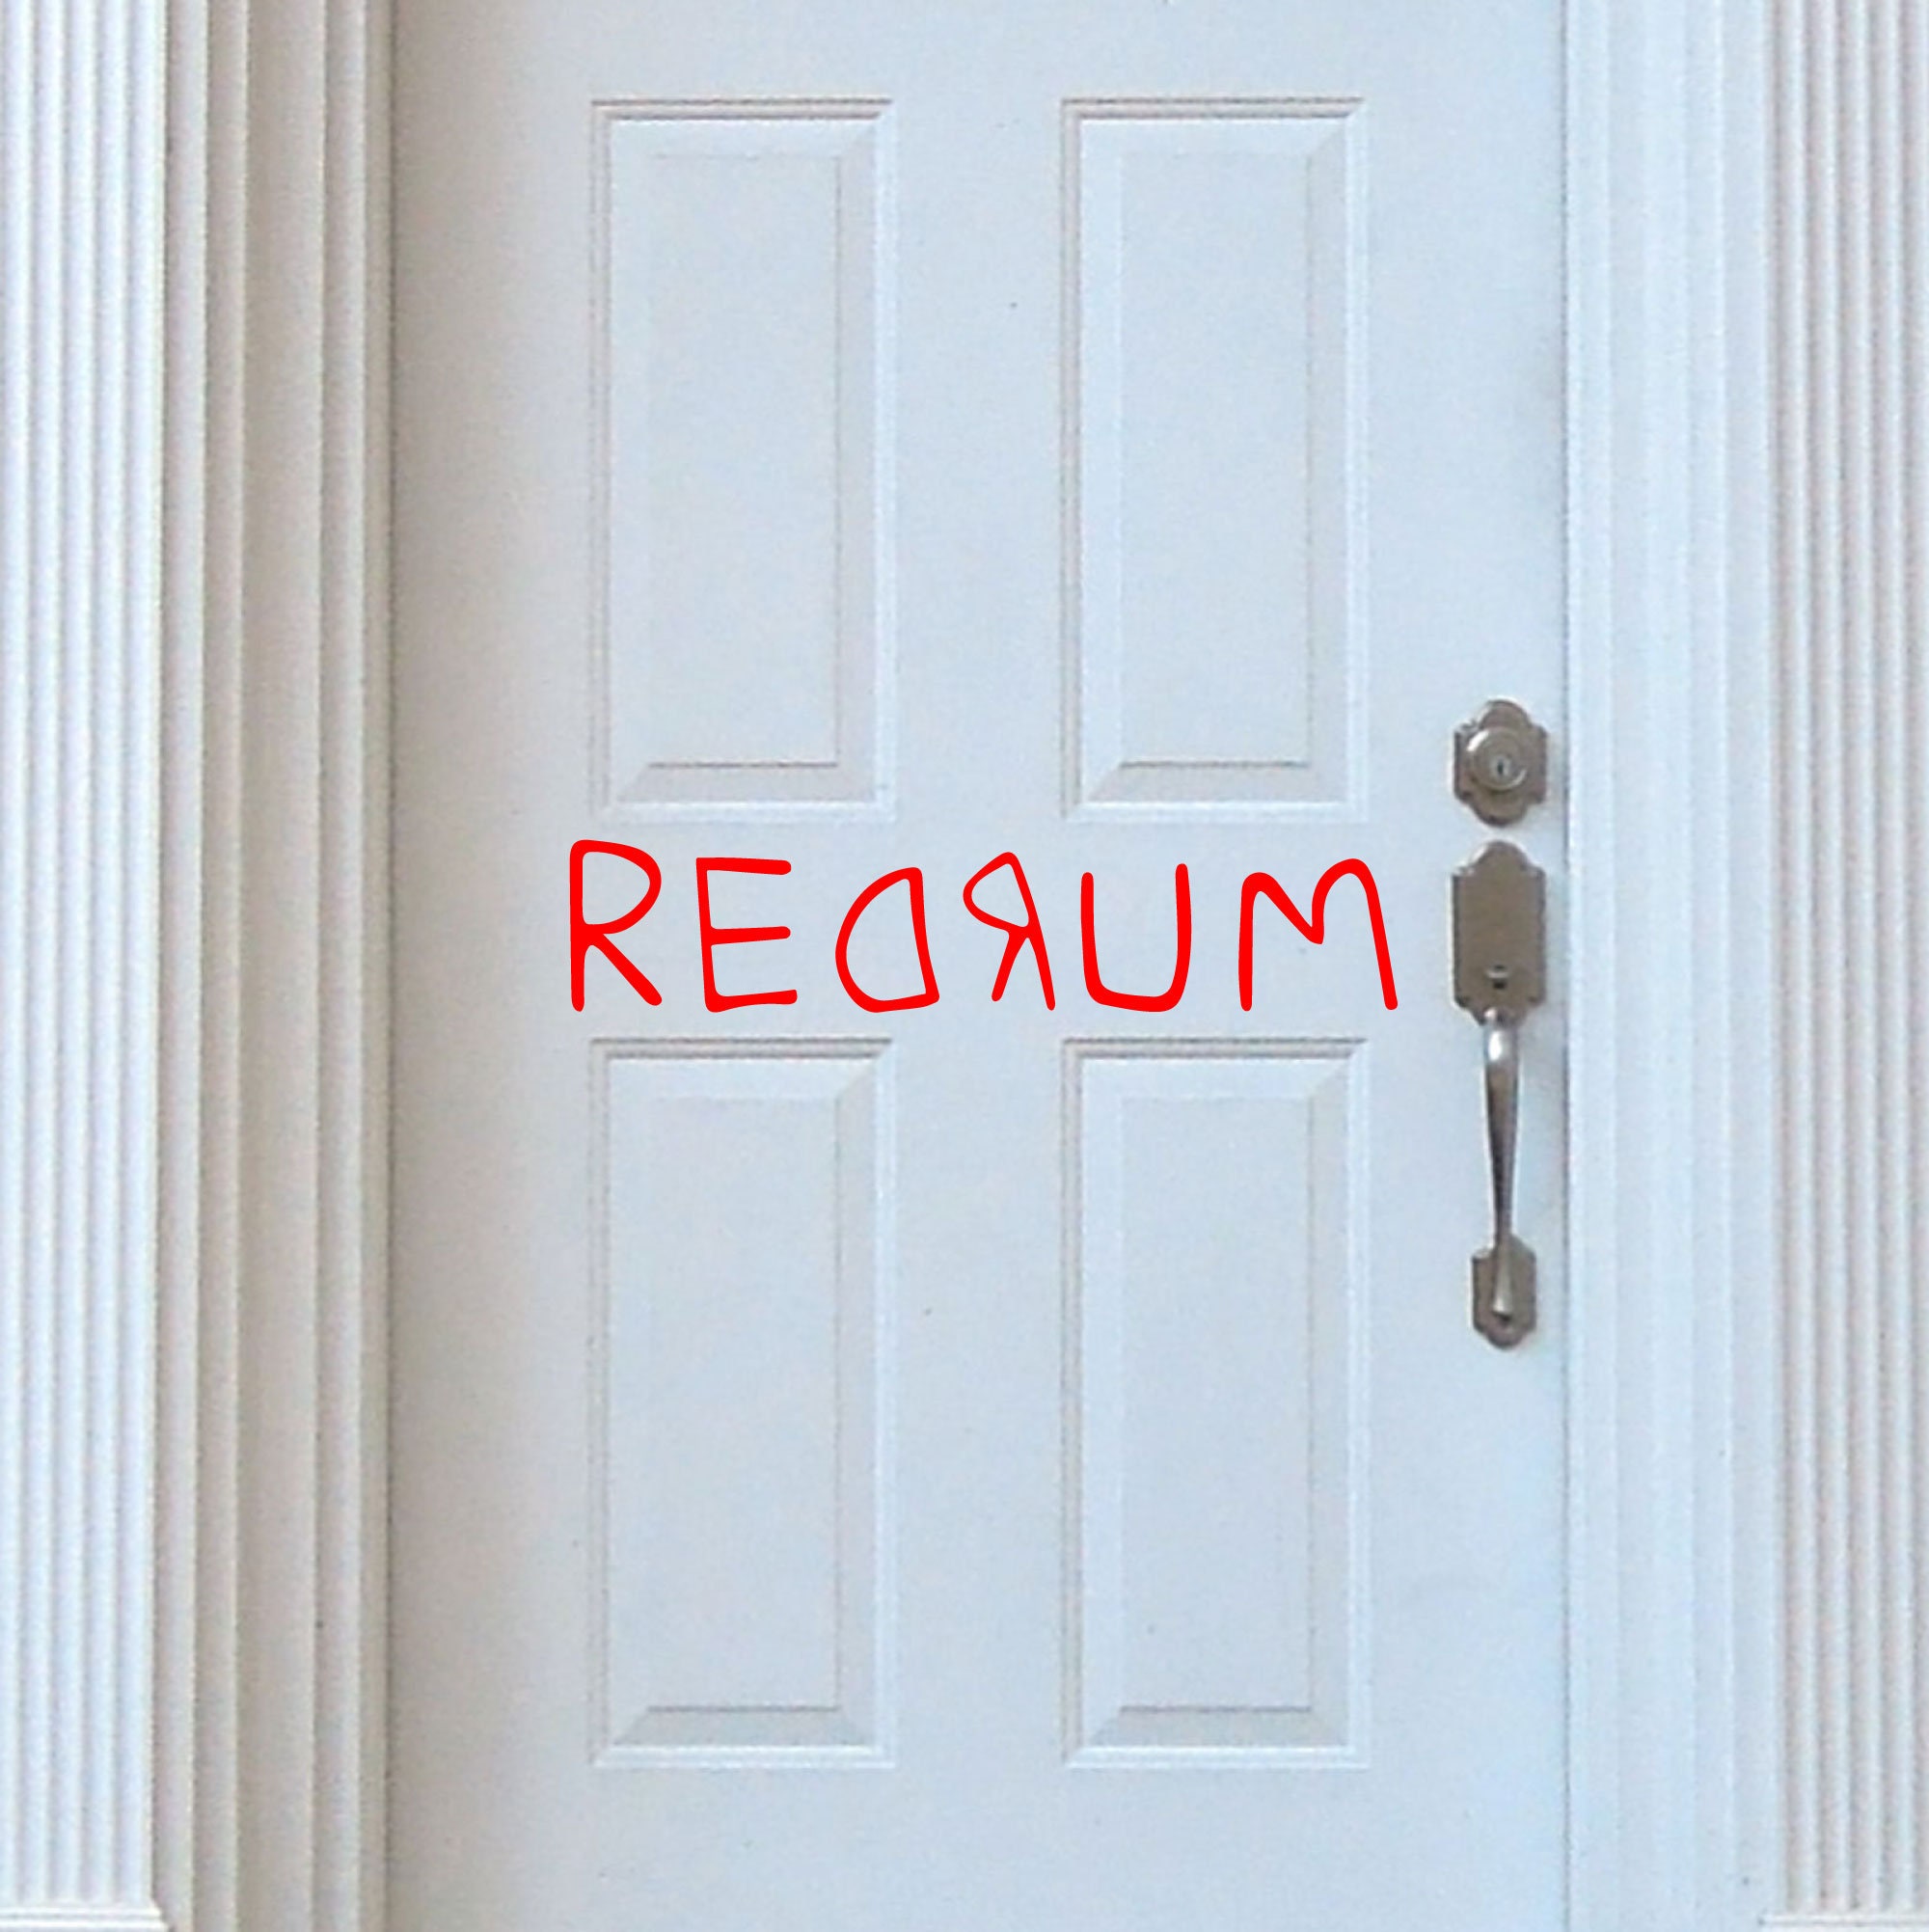 Framed Realistic 3D THE SHINING REDRUM Door Replica Diorama -  Sweden